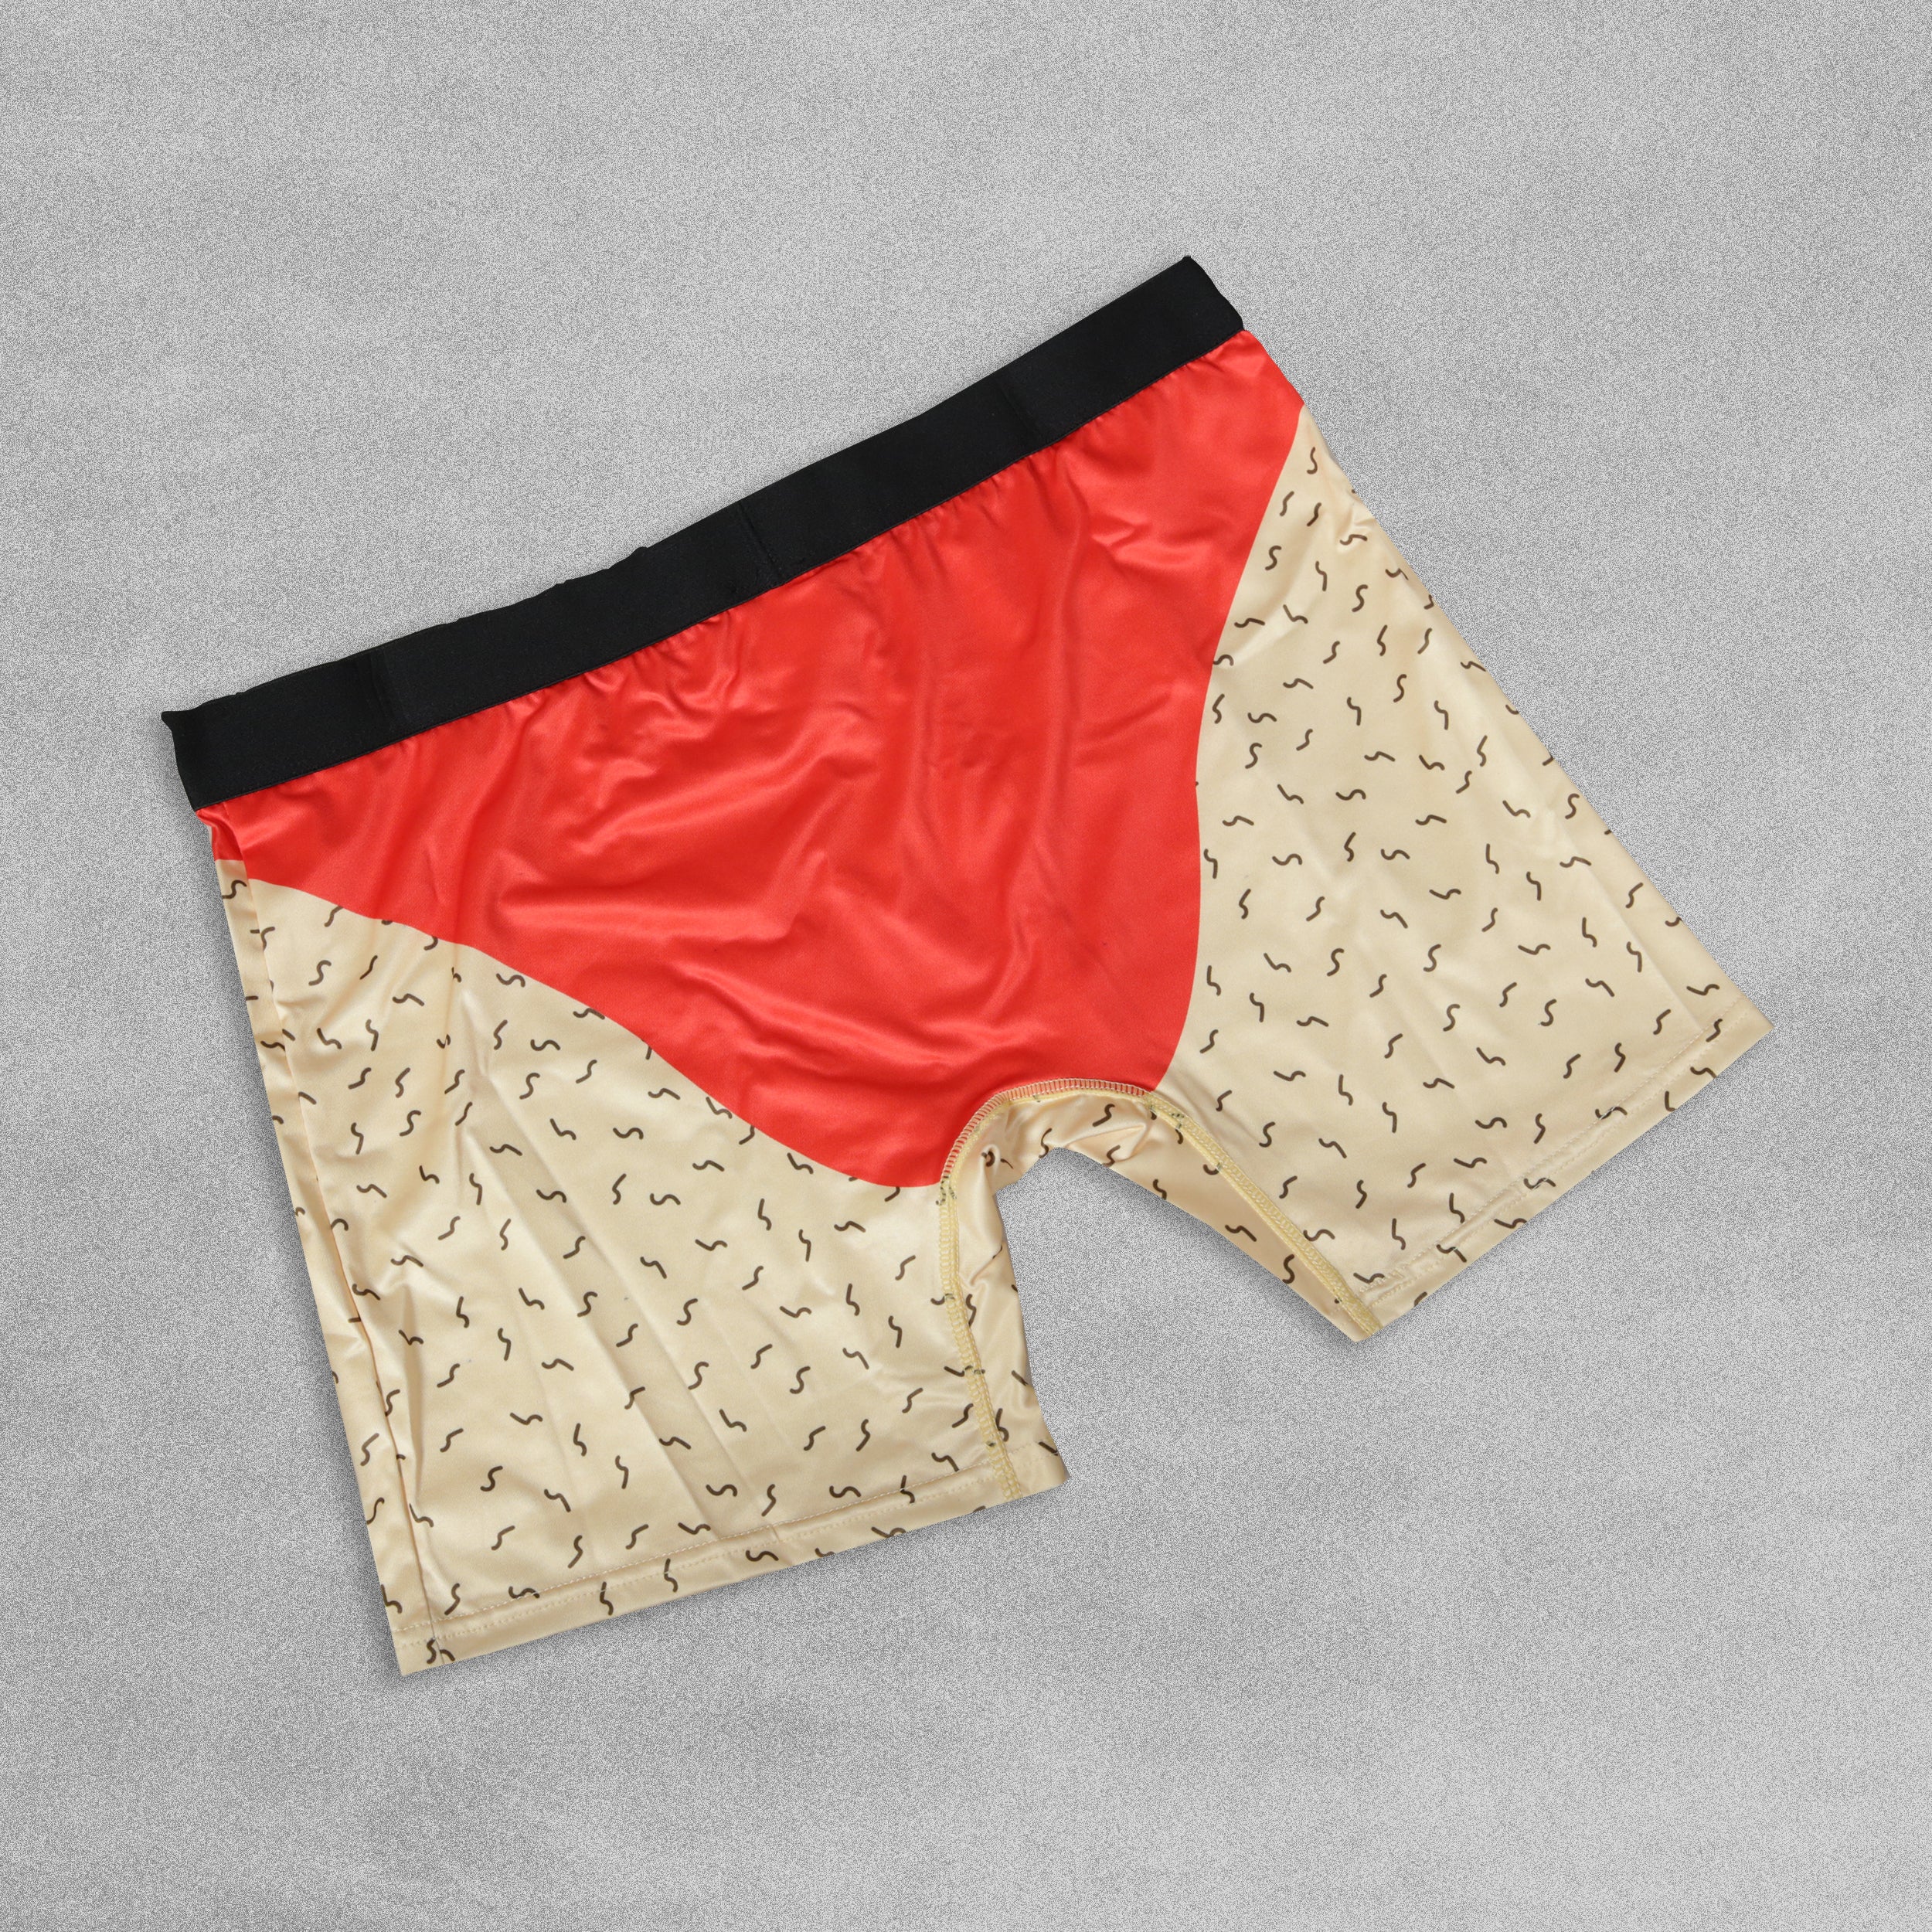 Mens Novelty Boxer Shorts - Red Pants!